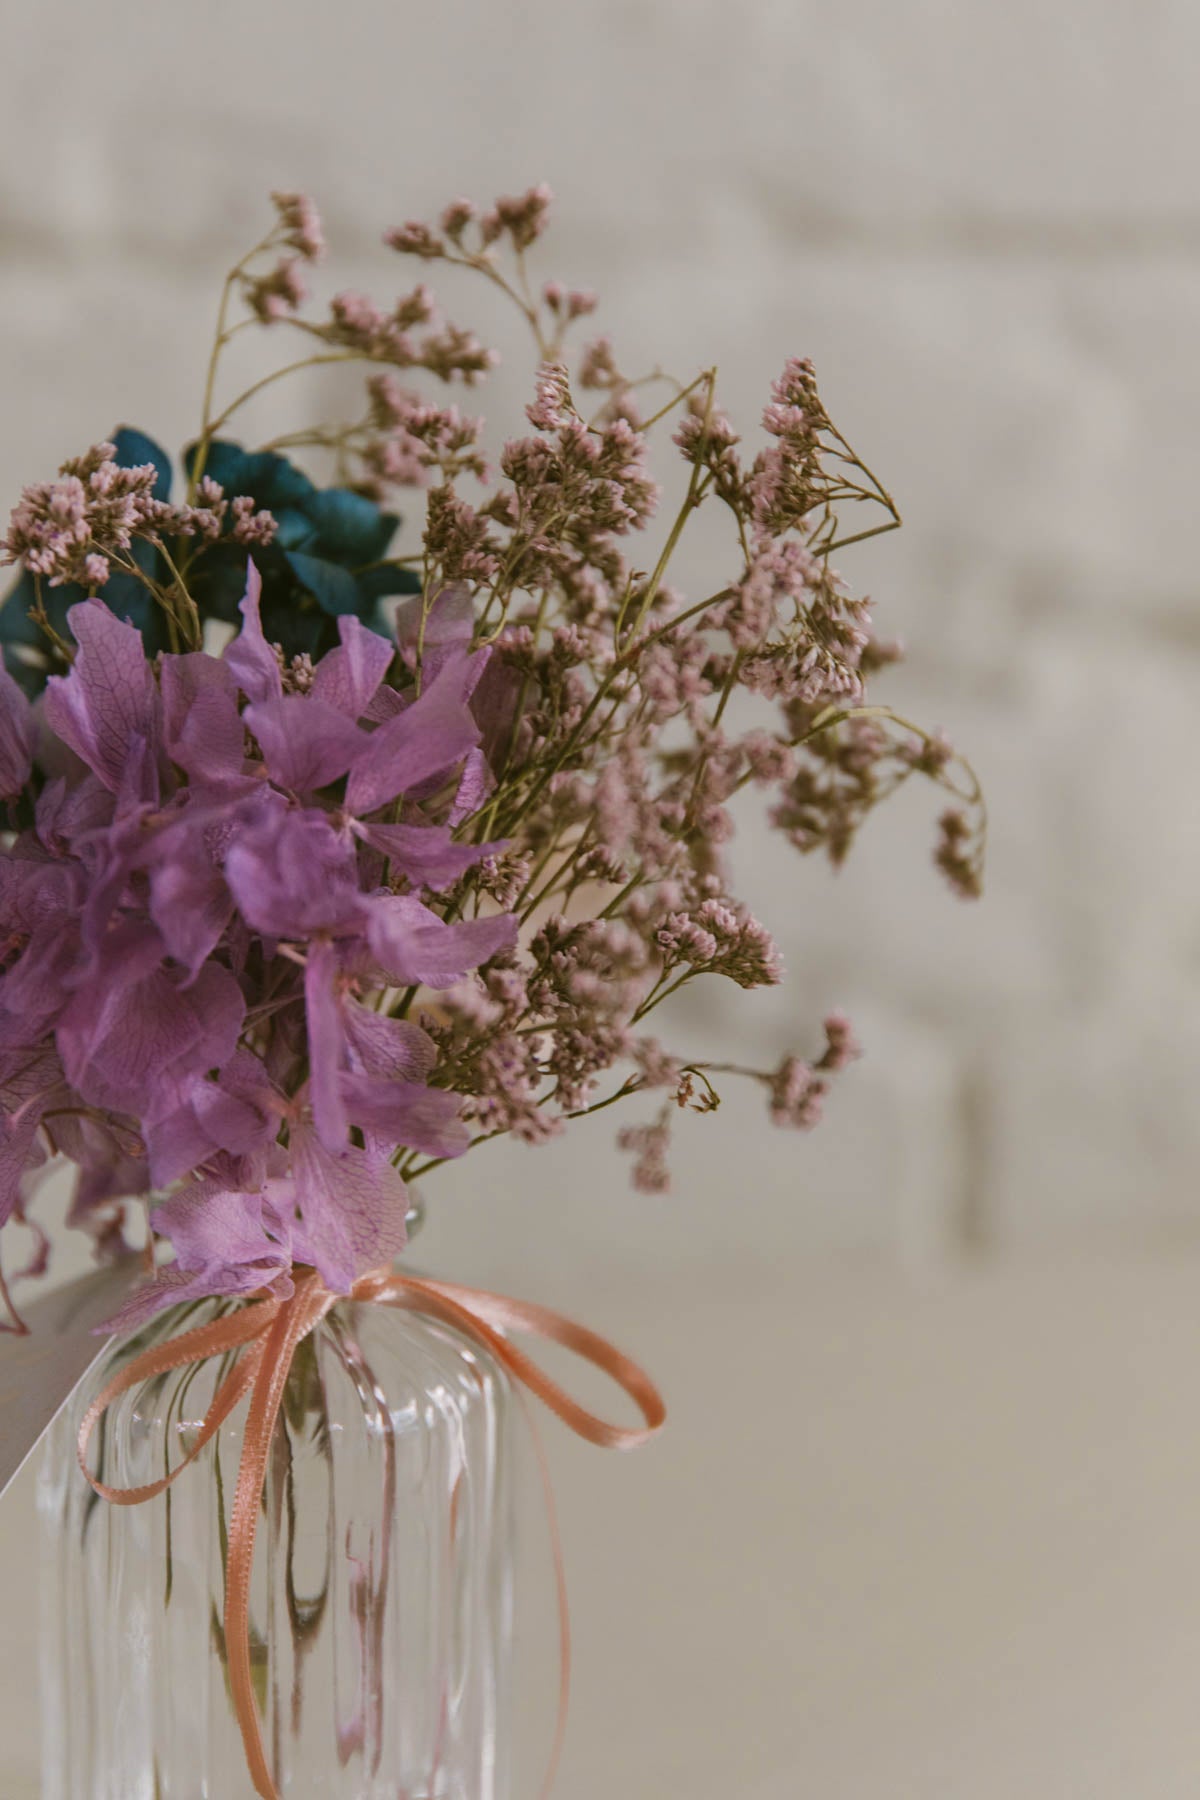 Everlasting Flowers in a Vase Linda